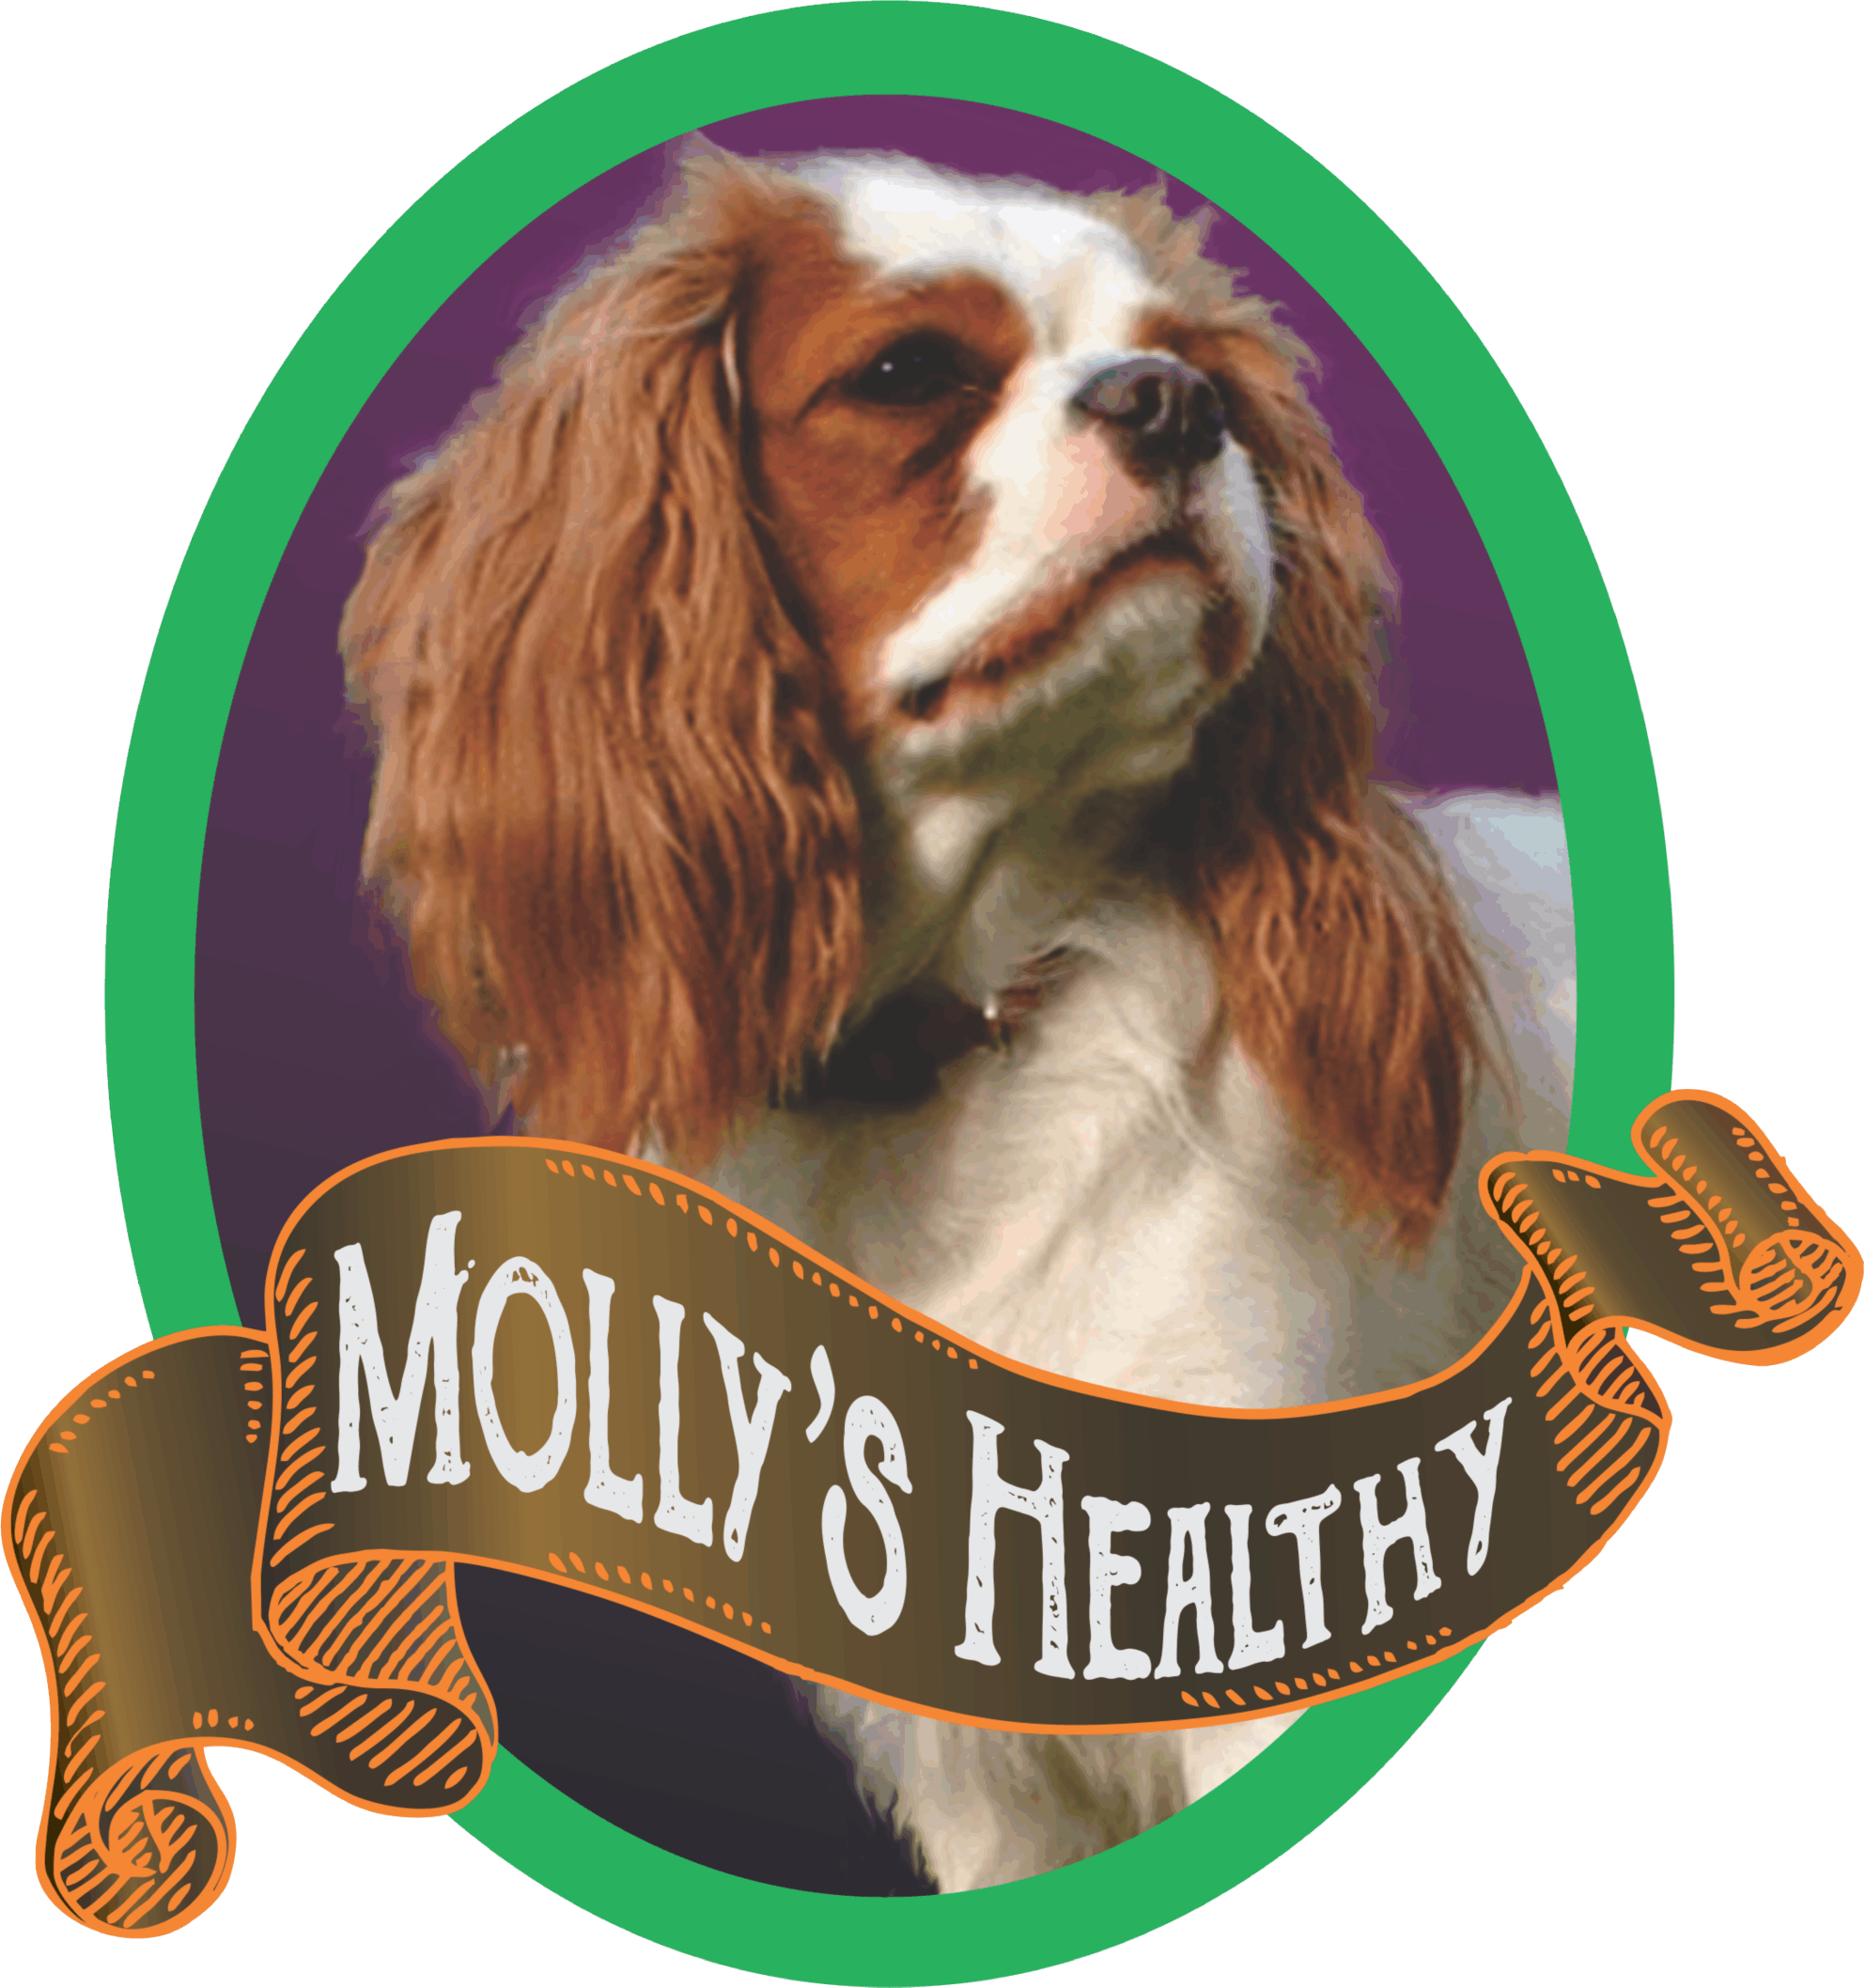 www.mollyshealthypfm.com